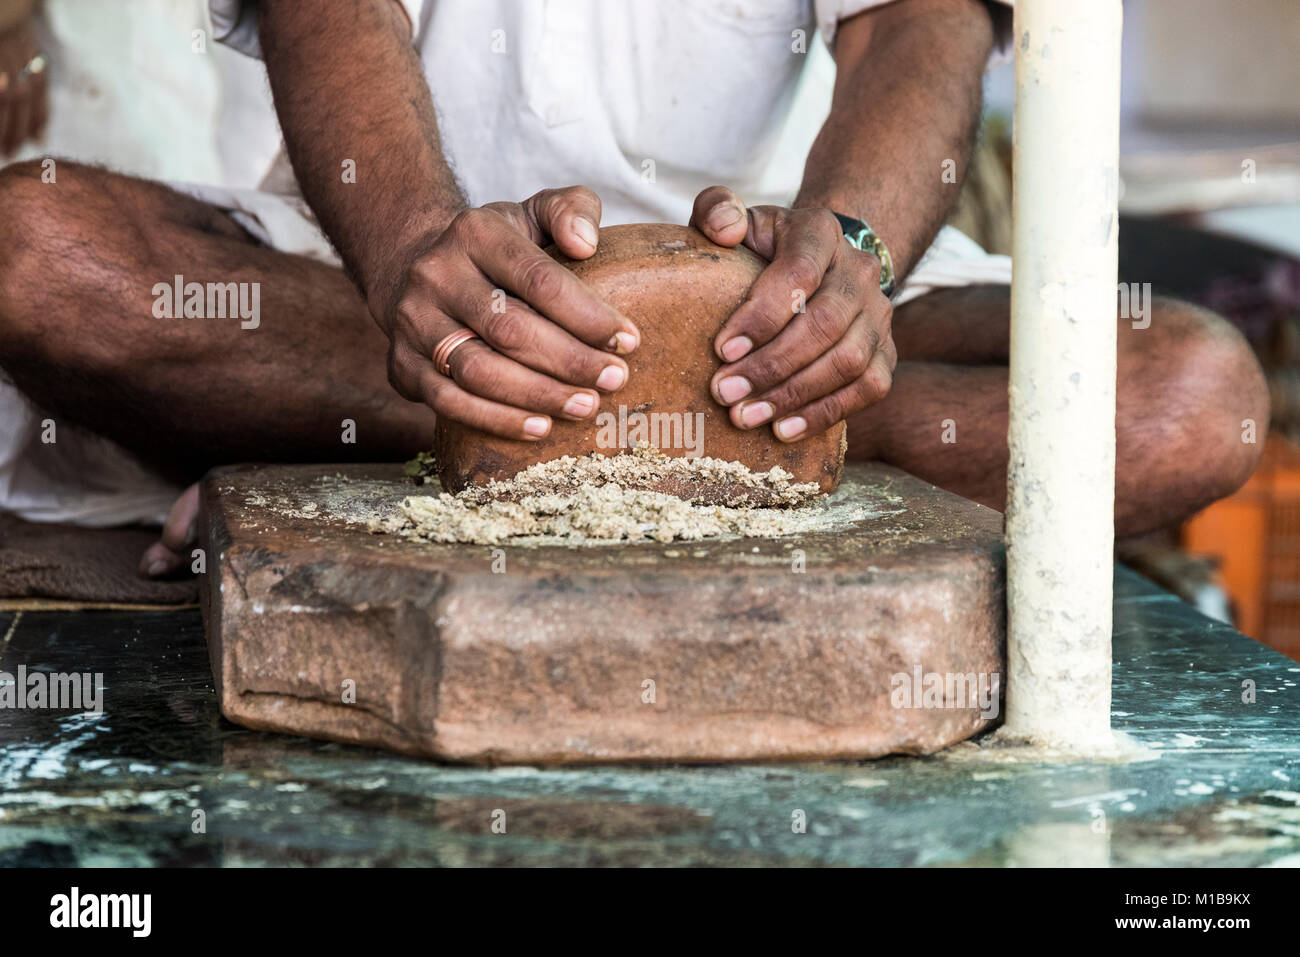 Thandai vendeur préparer / thandai meulage masala fait du cardamome, safran, amandes, graines de fenouil avec les mains sur base de bois à Nathdwara, Rajasthan, JE Banque D'Images